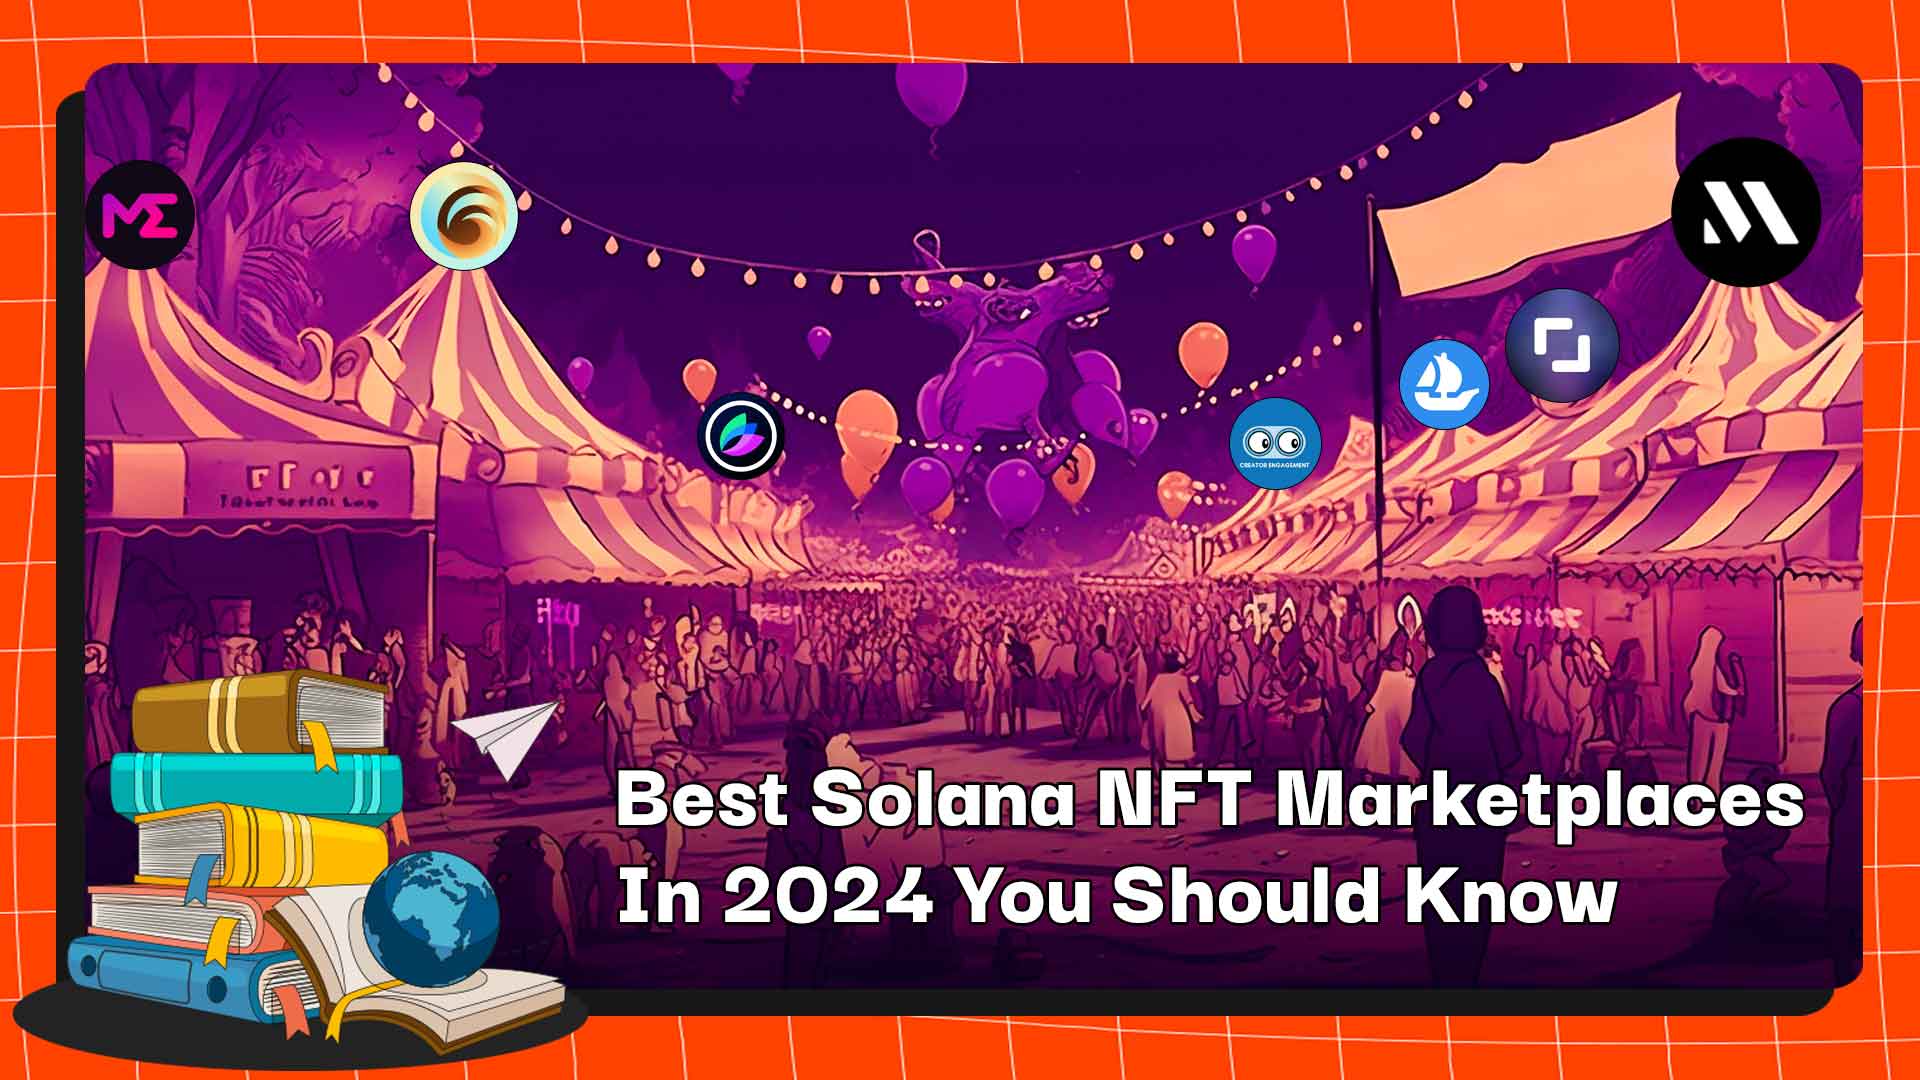 您应该知道的 2024 年最佳 Solana NFT 市场